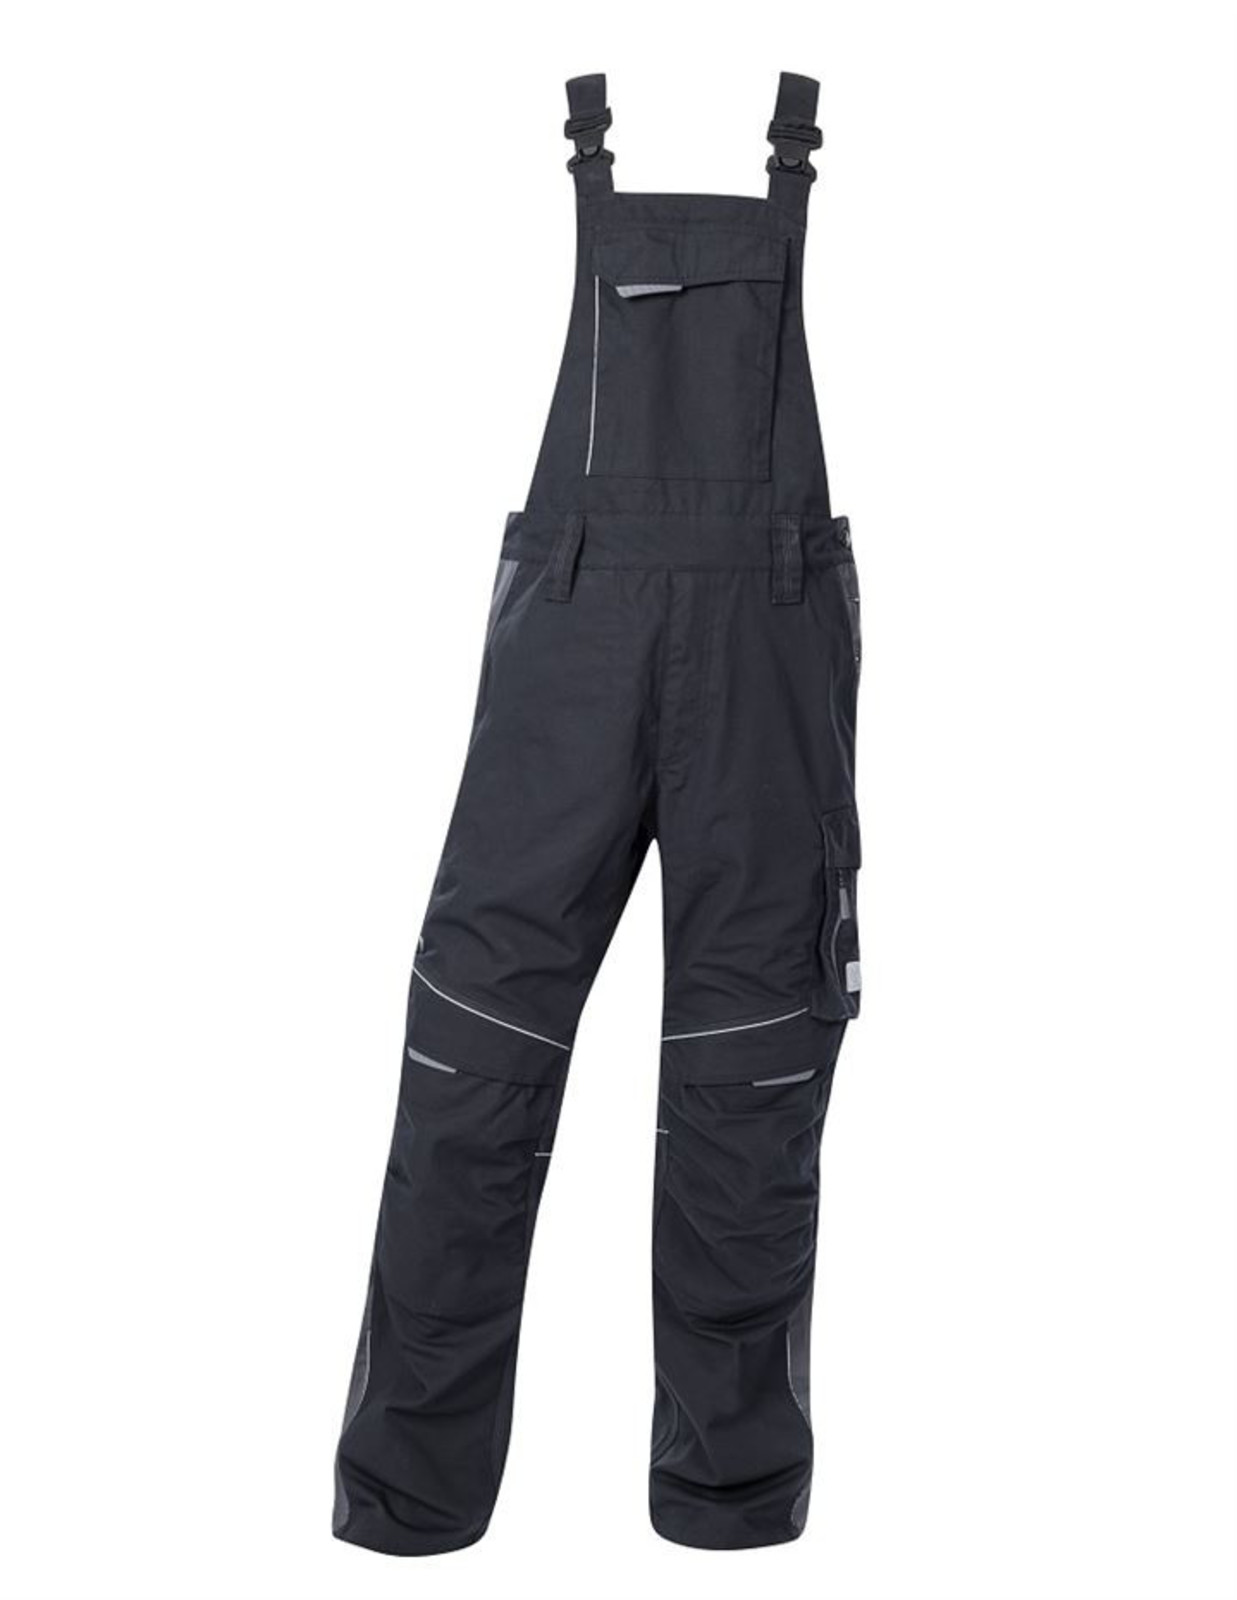 Pracovné nohavice na traky Ardon Urban+ - veľkosť: 62, farba: čierna/sivá